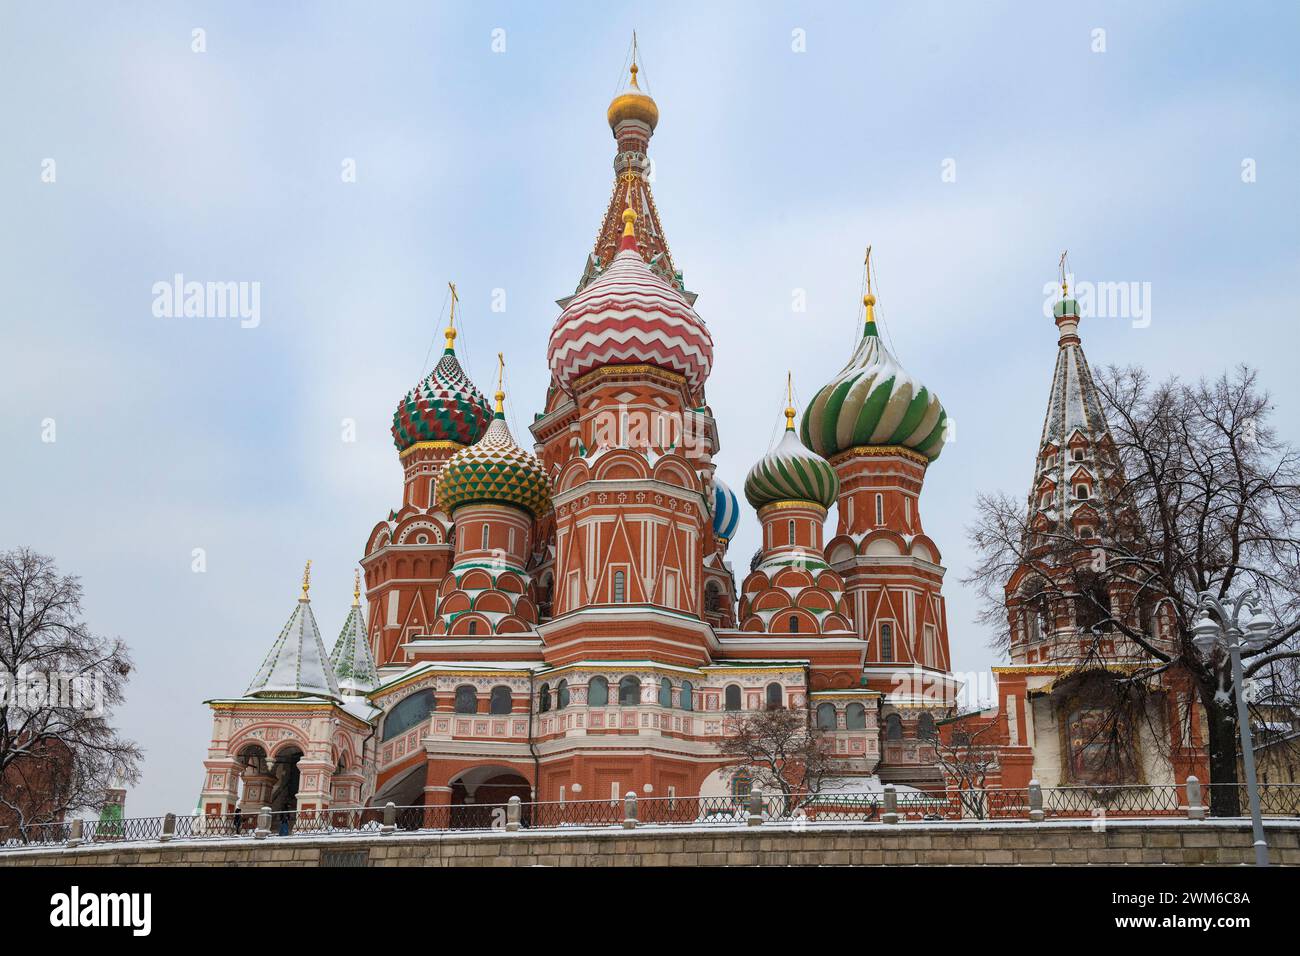 Alte Kathedrale der Fürsprache der Heiligen Jungfrau Maria (Basilius-Kathedrale) an einem bewölkten Januartag. Moskau, Russland Stockfoto